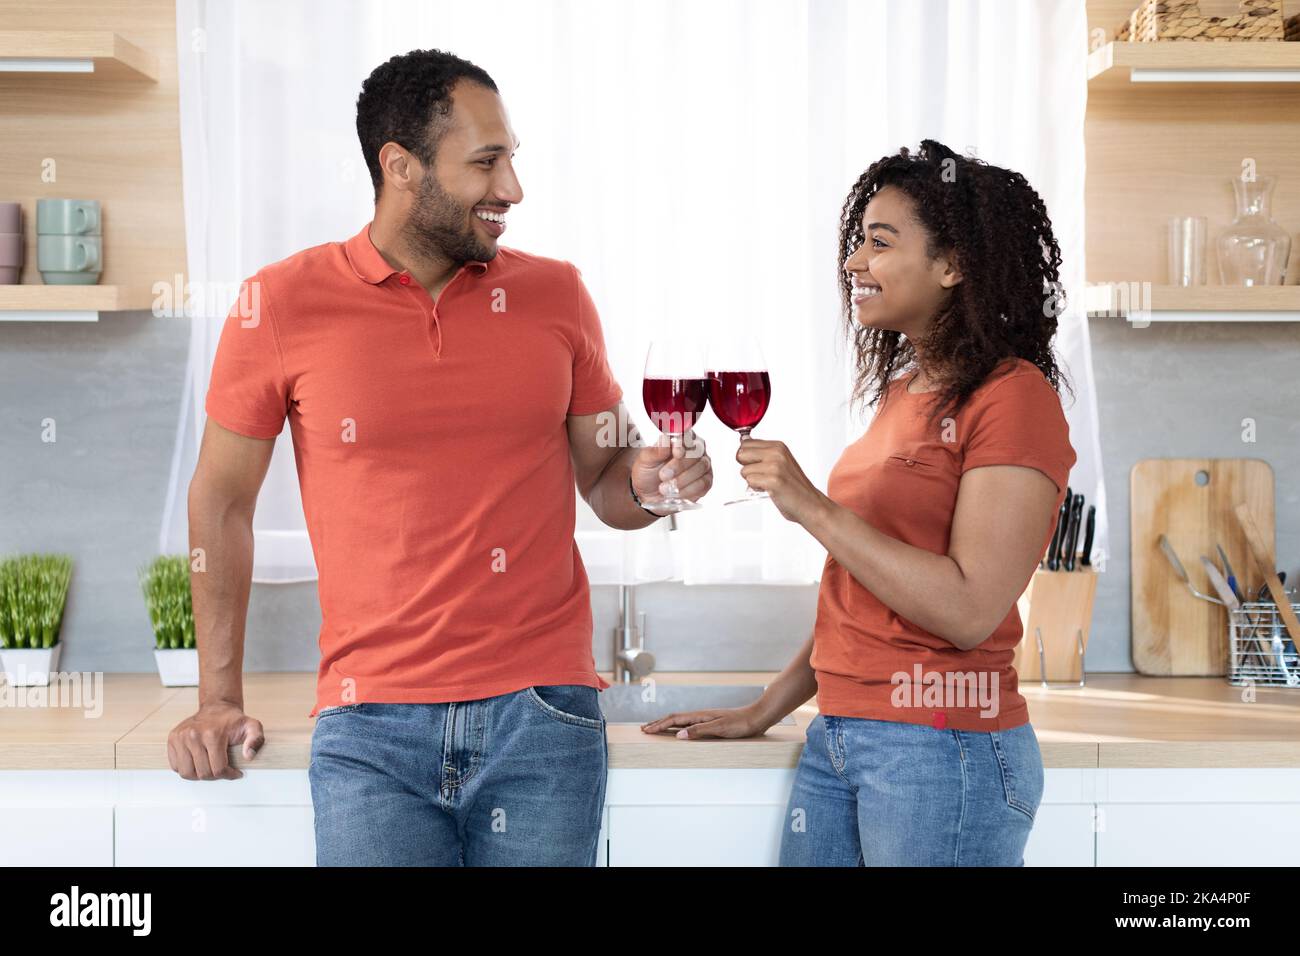 Lächelnde, fröhliche junge schwarze Frau und Mann mit einem Glas Wein genießen Sie Urlaub, Freizeit und Feier Stockfoto